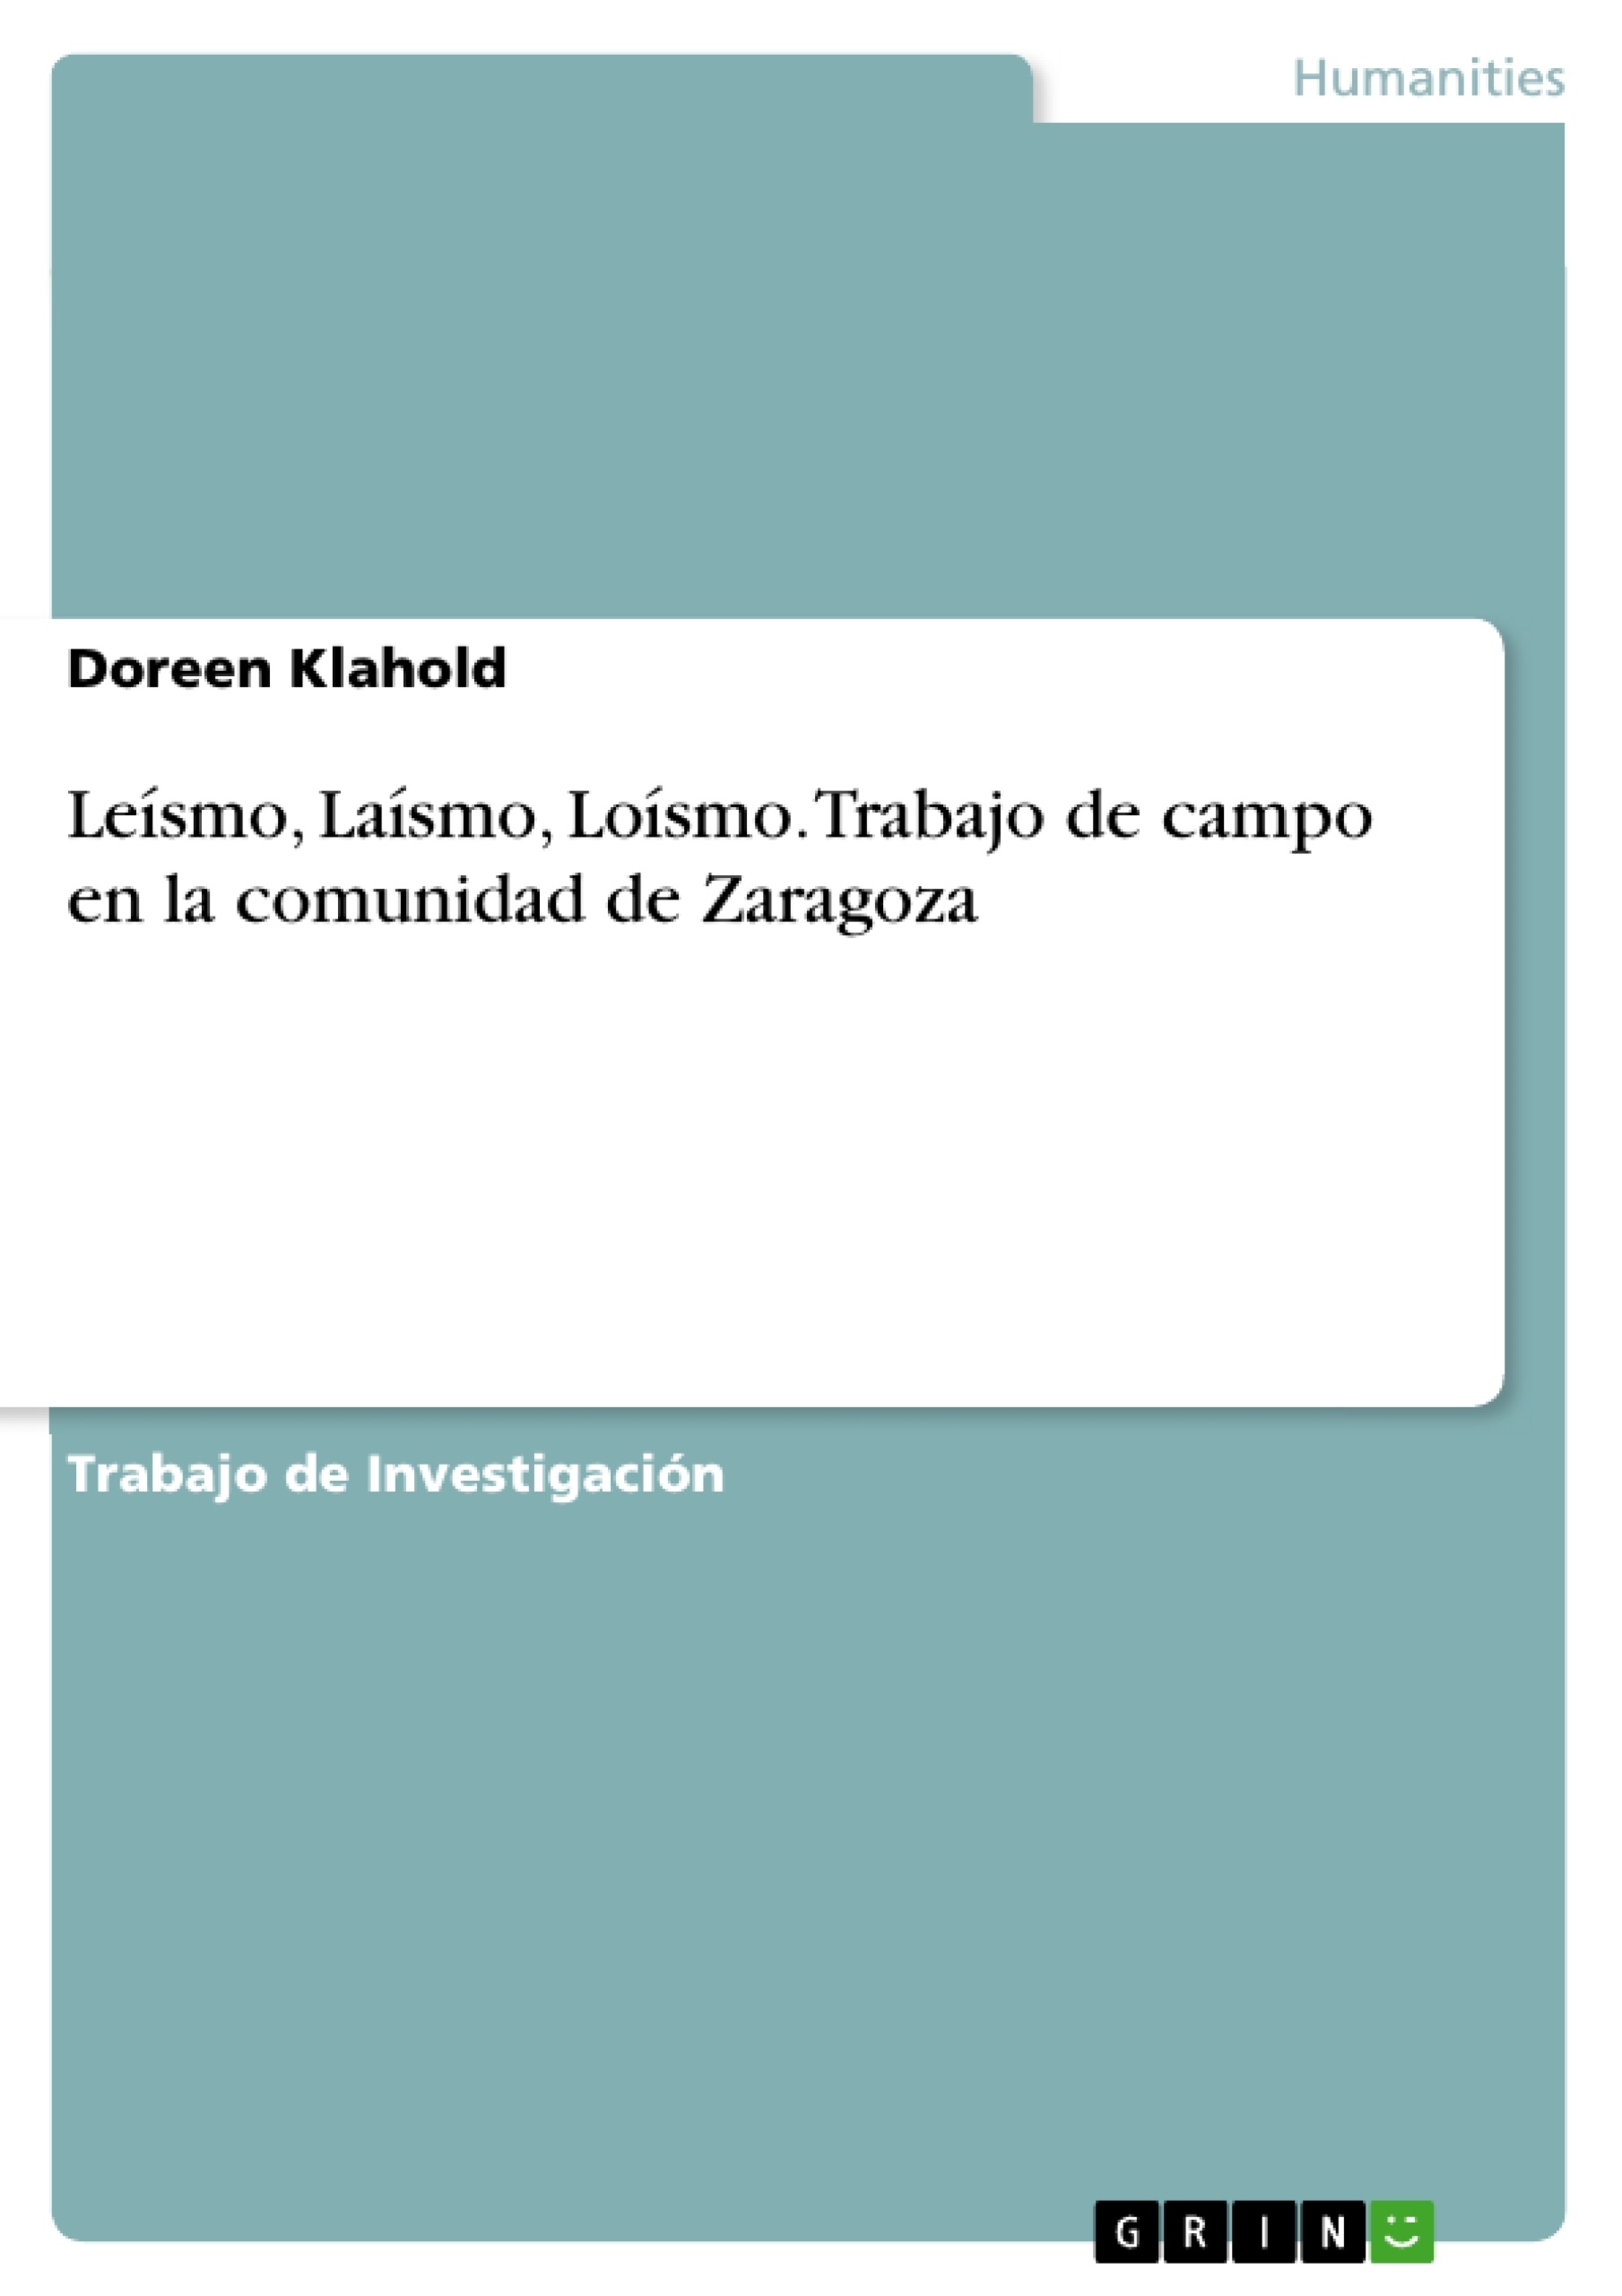 Title: Leísmo, Laísmo, Loísmo. Trabajo de campo en la comunidad de Zaragoza